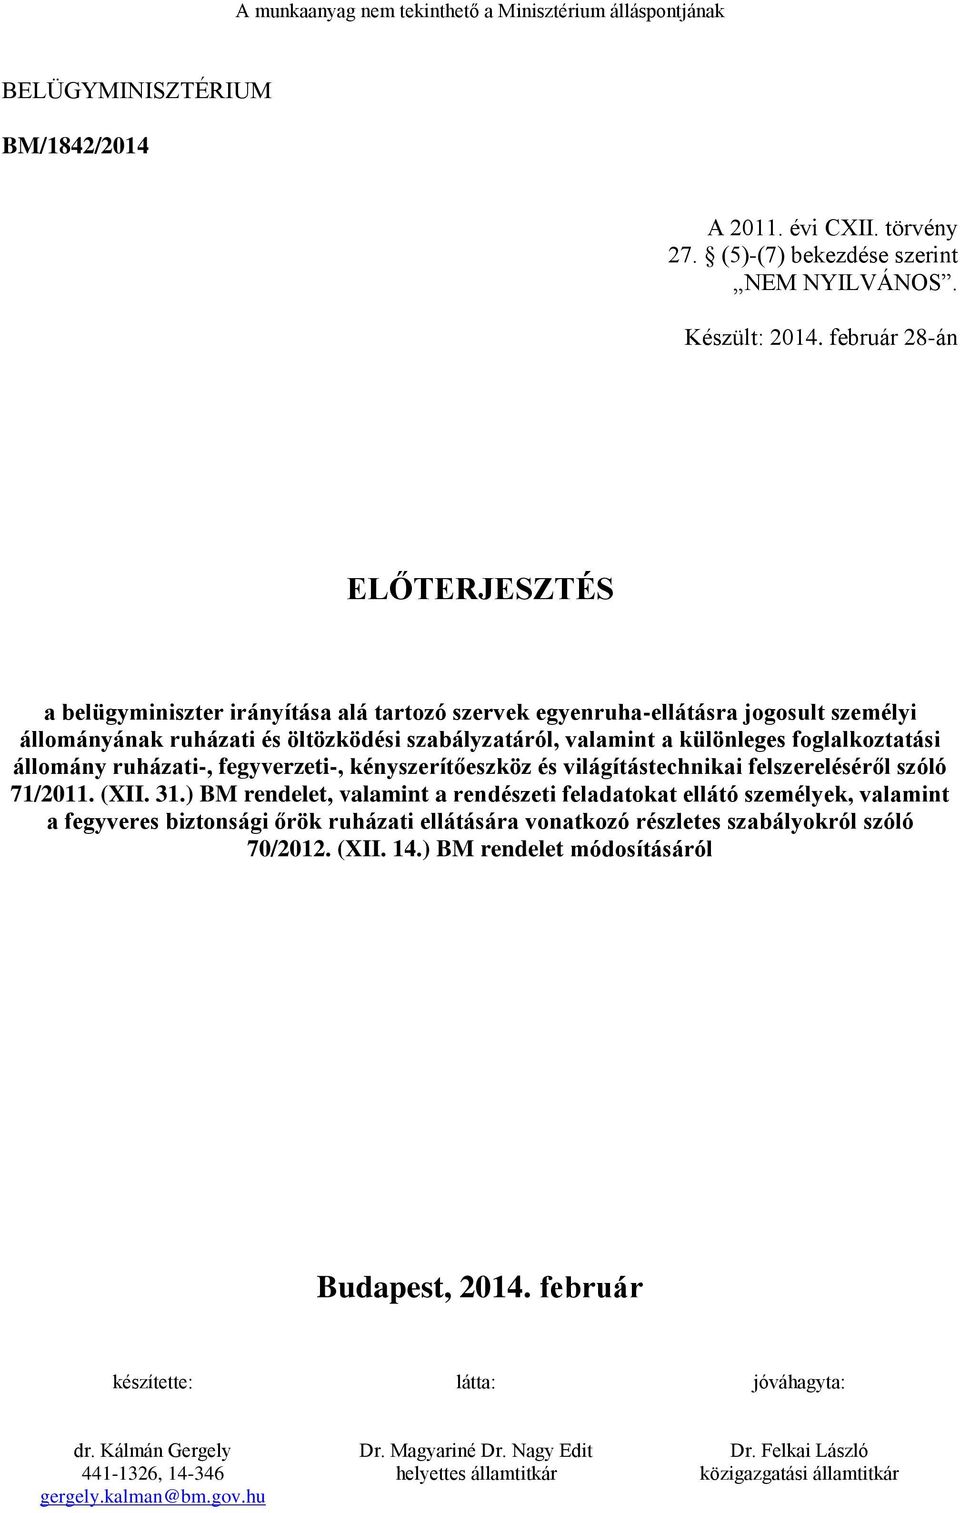 foglalkoztatási állomány ruházati-, fegyverzeti-, kényszerítőeszköz és világítástechnikai felszereléséről szóló 71/2011. (XII. 31.